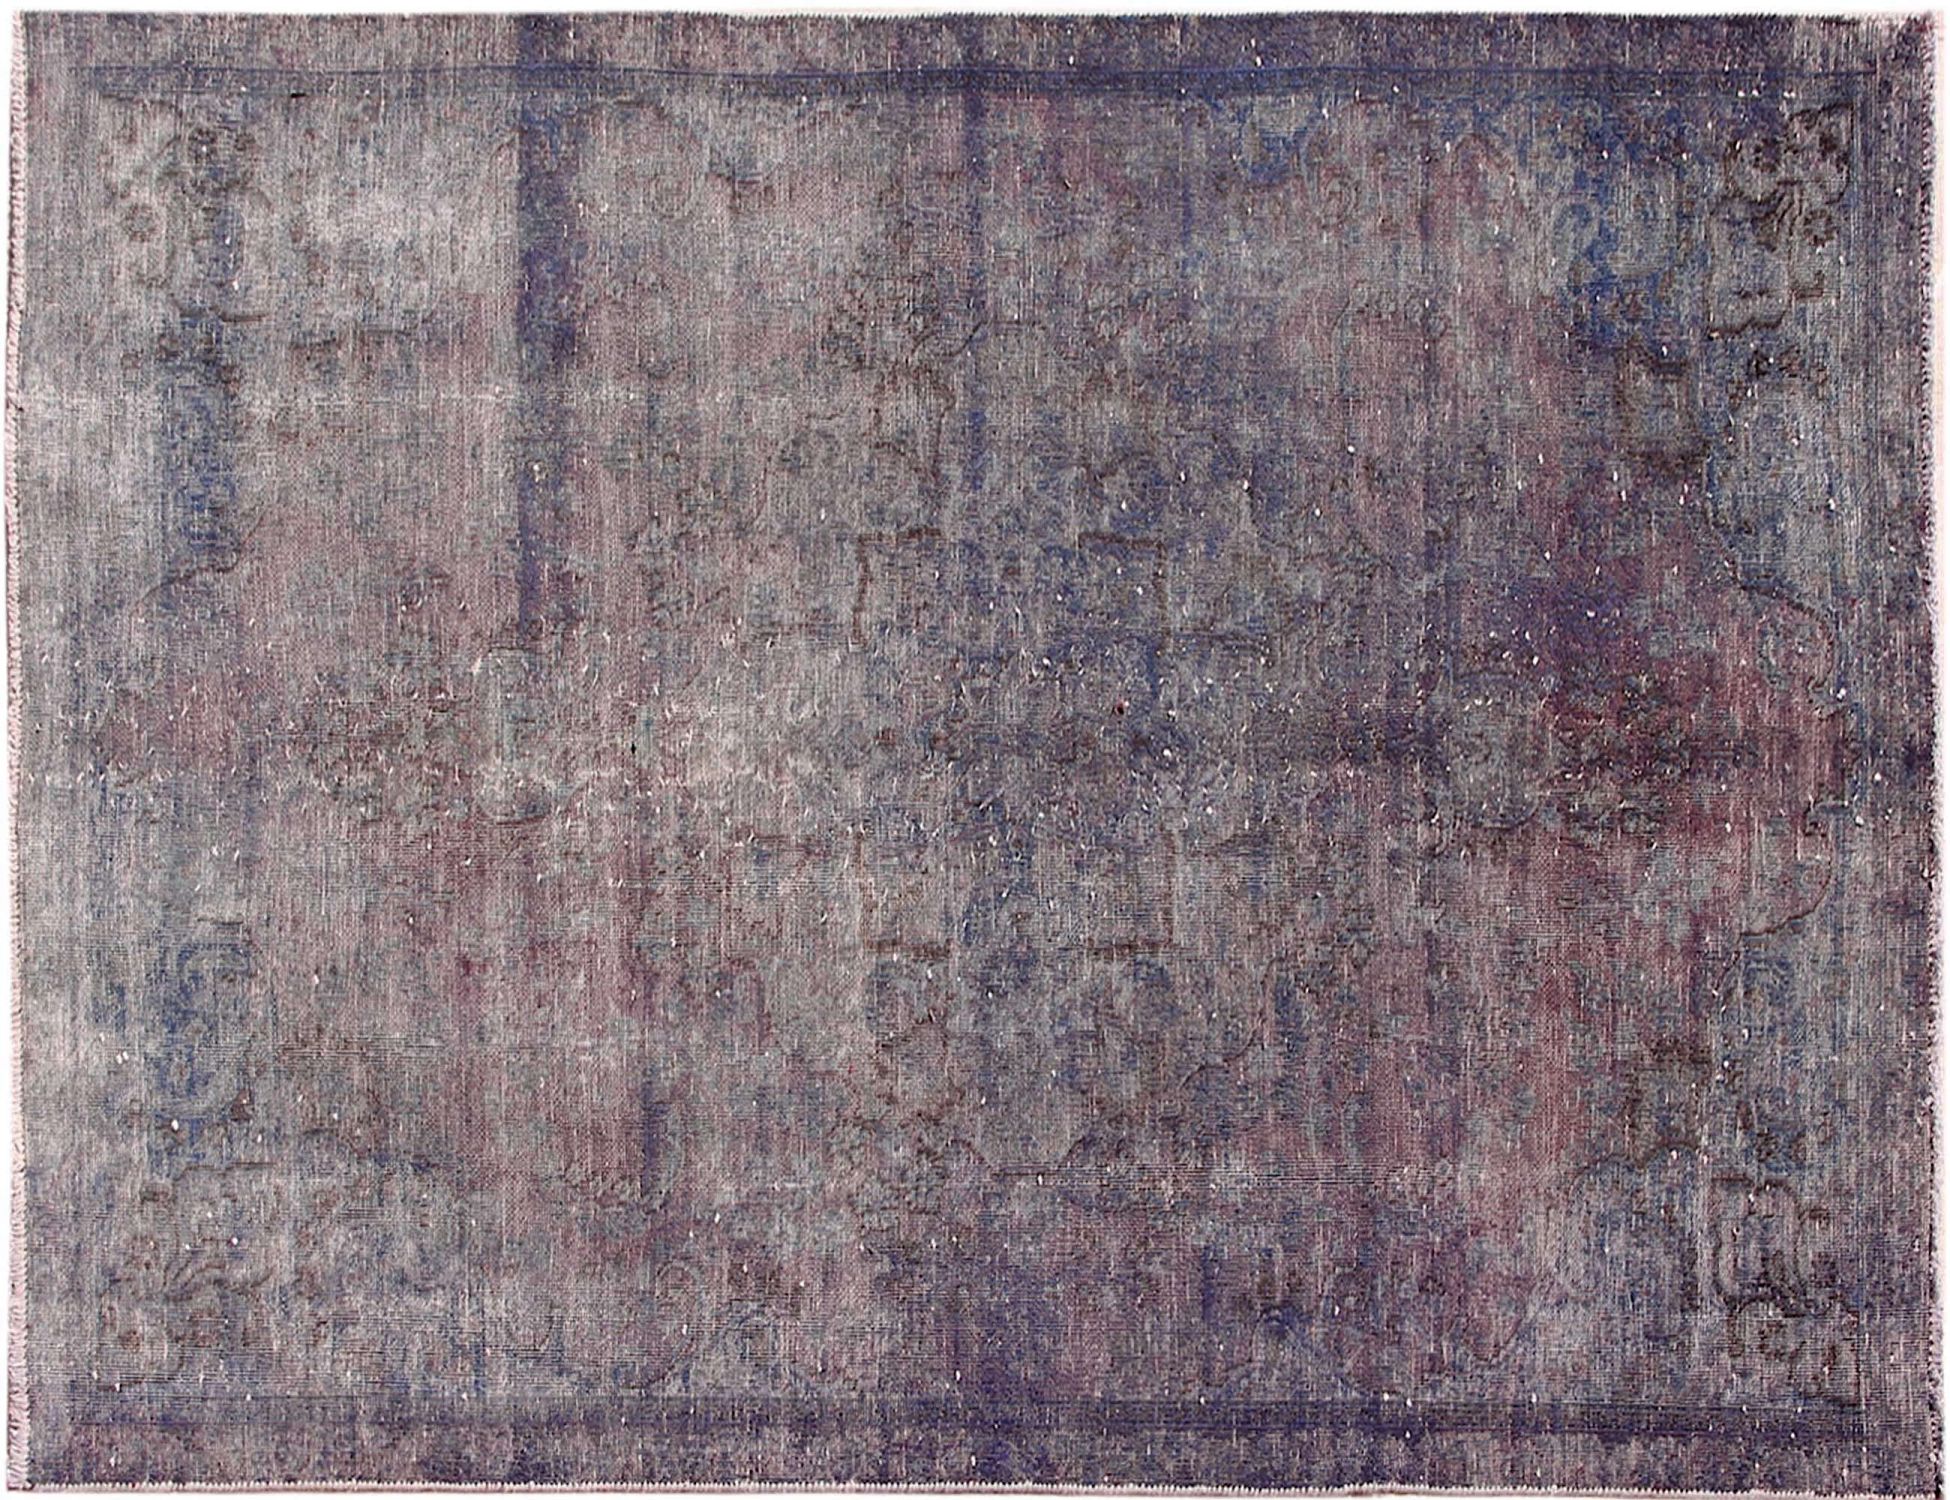 Persischer Vintage Teppich  blau <br/>242 x 150 cm